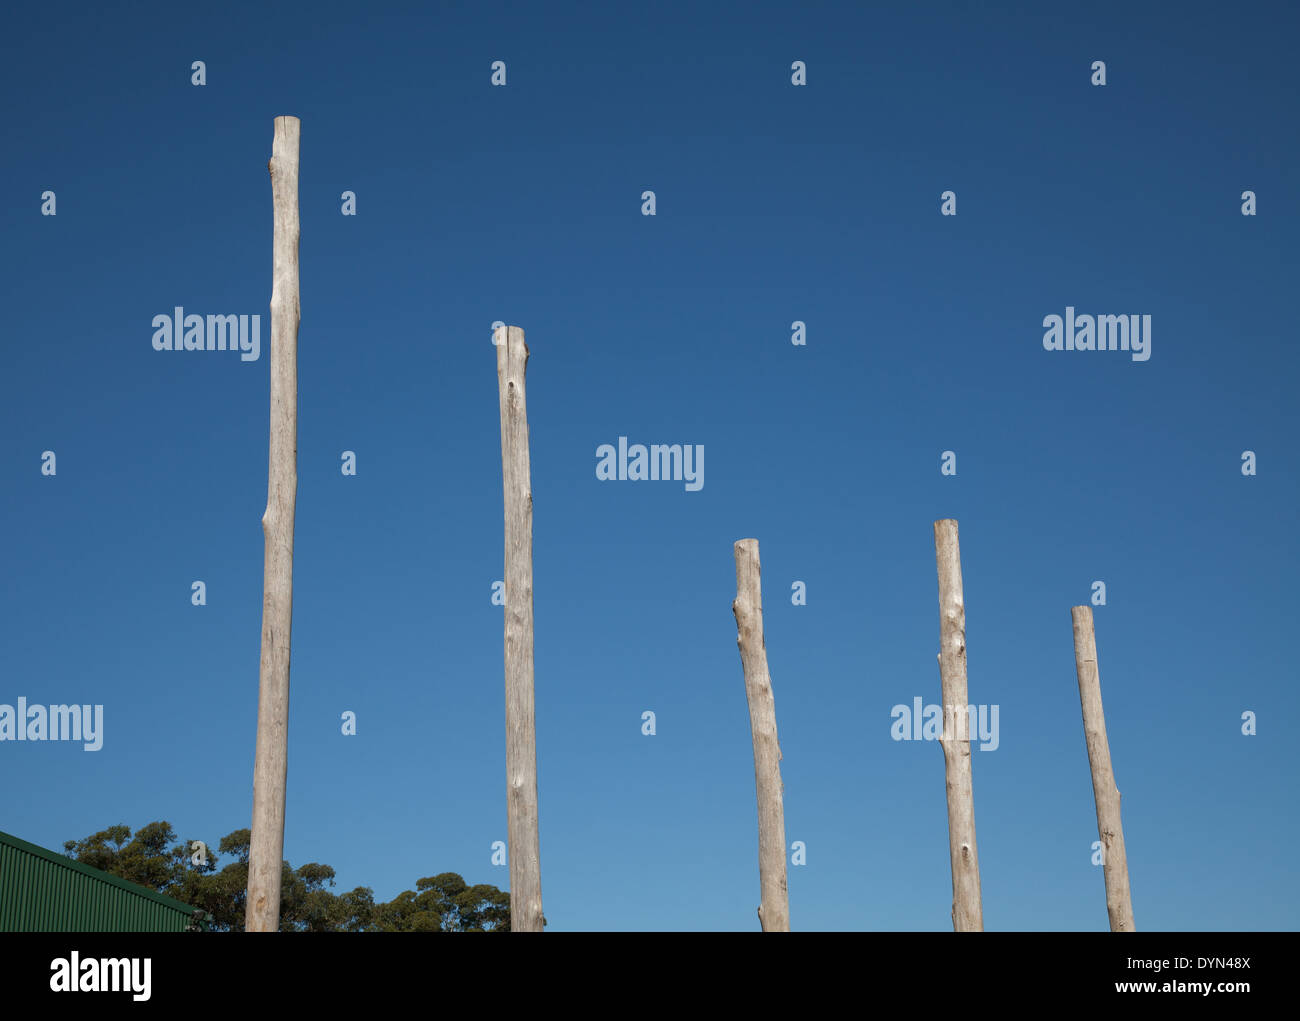 Eine Reihe von Holz Polen gegen einen blauen Himmel, der ein Diagramm ähnelt Stockfoto